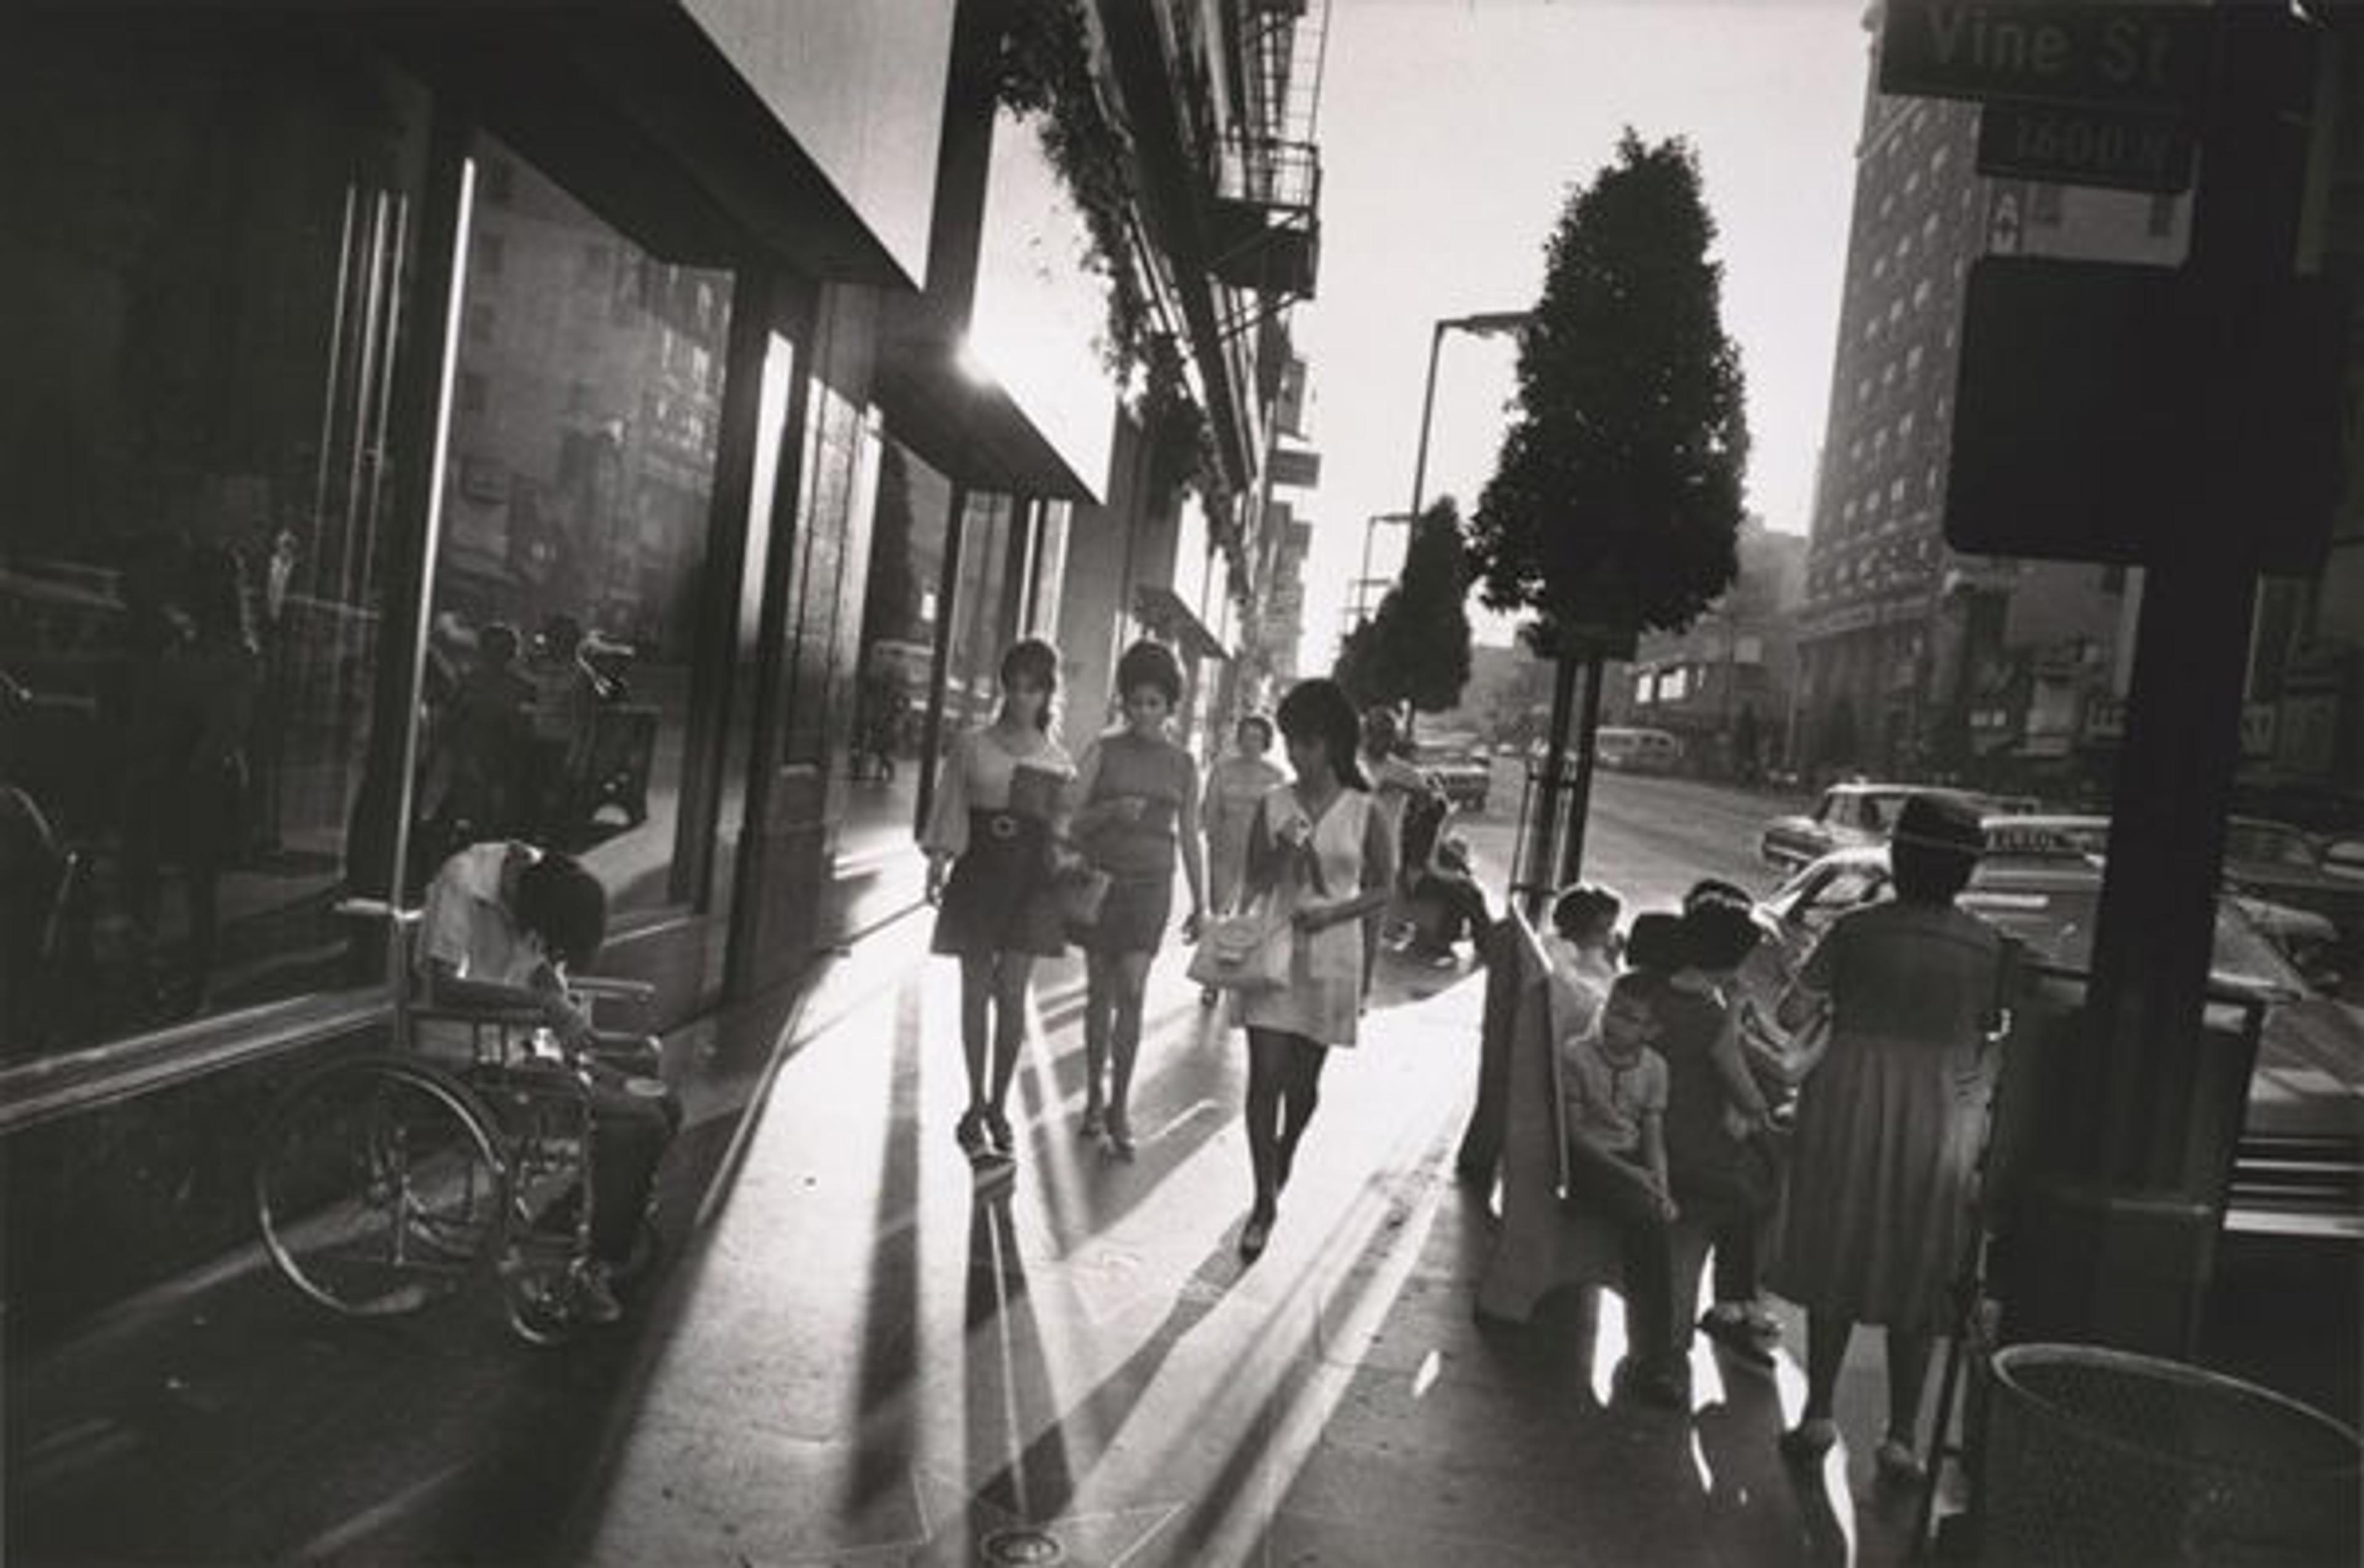 Garry Winogrand (American, 1928–1984). Los Angeles, 1969. Gelatin silver print. Fraenkel Gallery, San Francisco